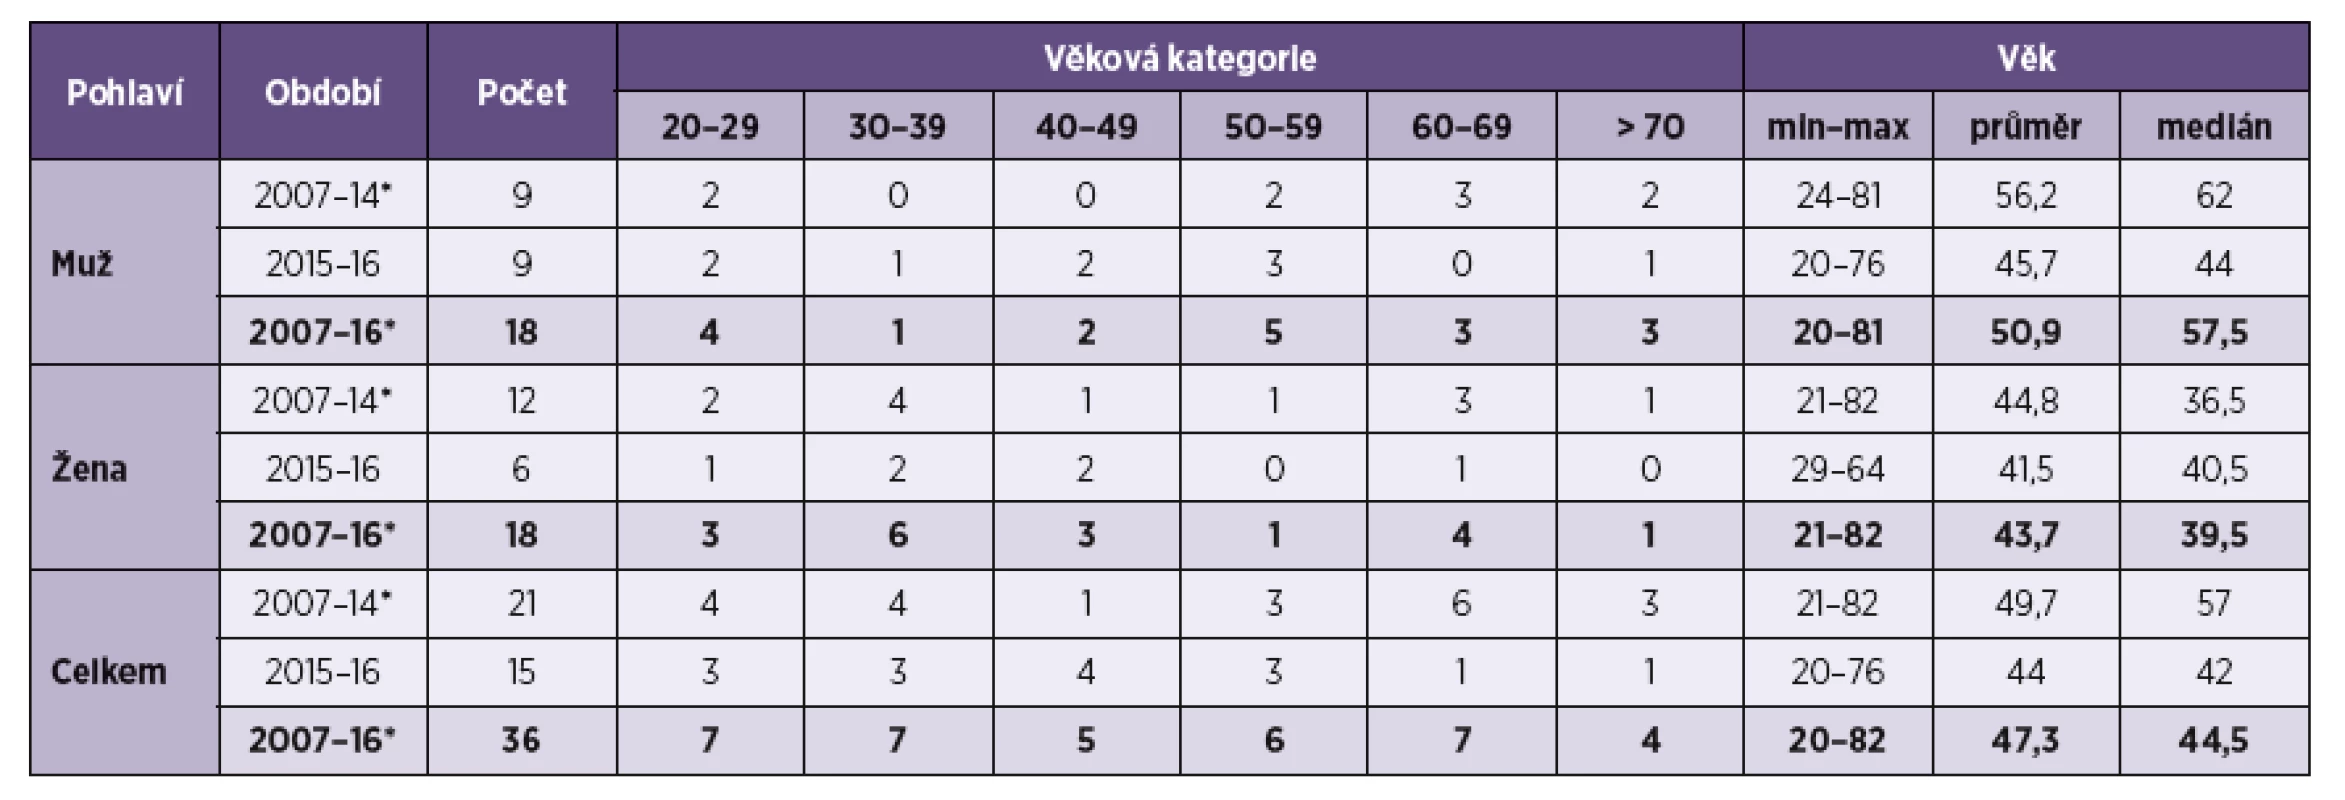 Pohlaví a věk pacientů v době stanovení diagnózy alveolární echinokokózy v období 2007–2016 v ČR, včetně dvou již publikovaných případů [28, 29] Zdroj údajů: Kolářová L. et al. [22], Jůza T. et al. [27].
Tab. 1 Gender and age of patients at the time of initial diagnosis of alveolar echinococcosis during a period of 2007–2016 in the CR, including two published cases [28, 29] Source of data: Kolářová L. et al. [22], Jůza T. et al. [27].